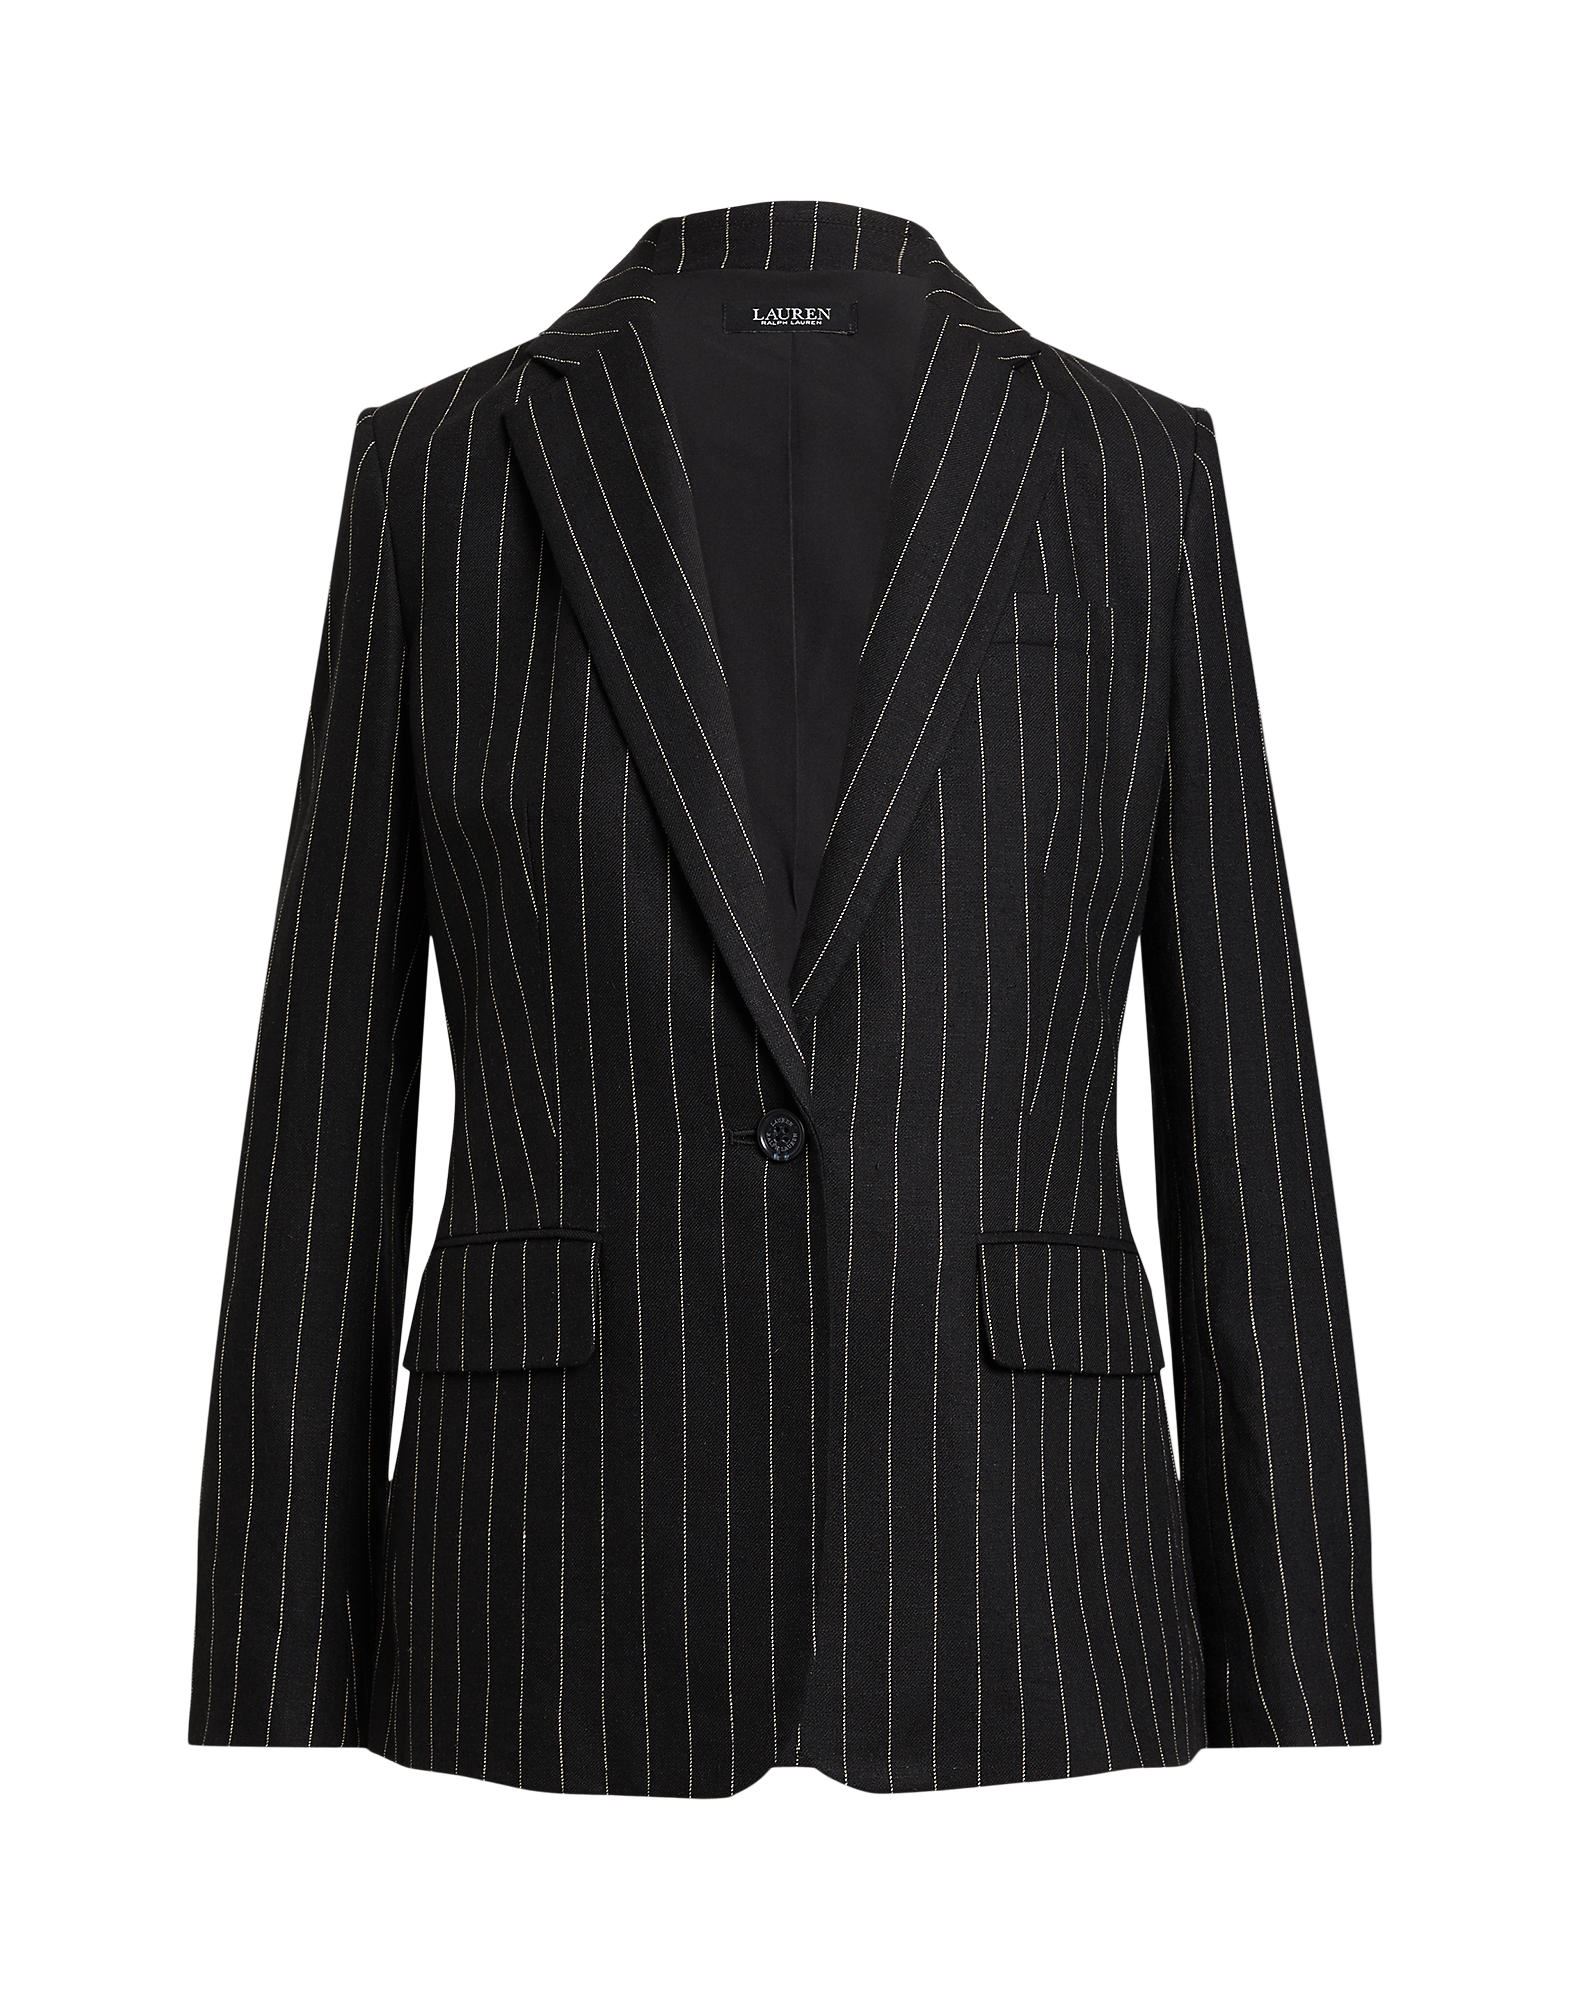 Lauren Ralph Lauren Suit Jackets In Black | ModeSens